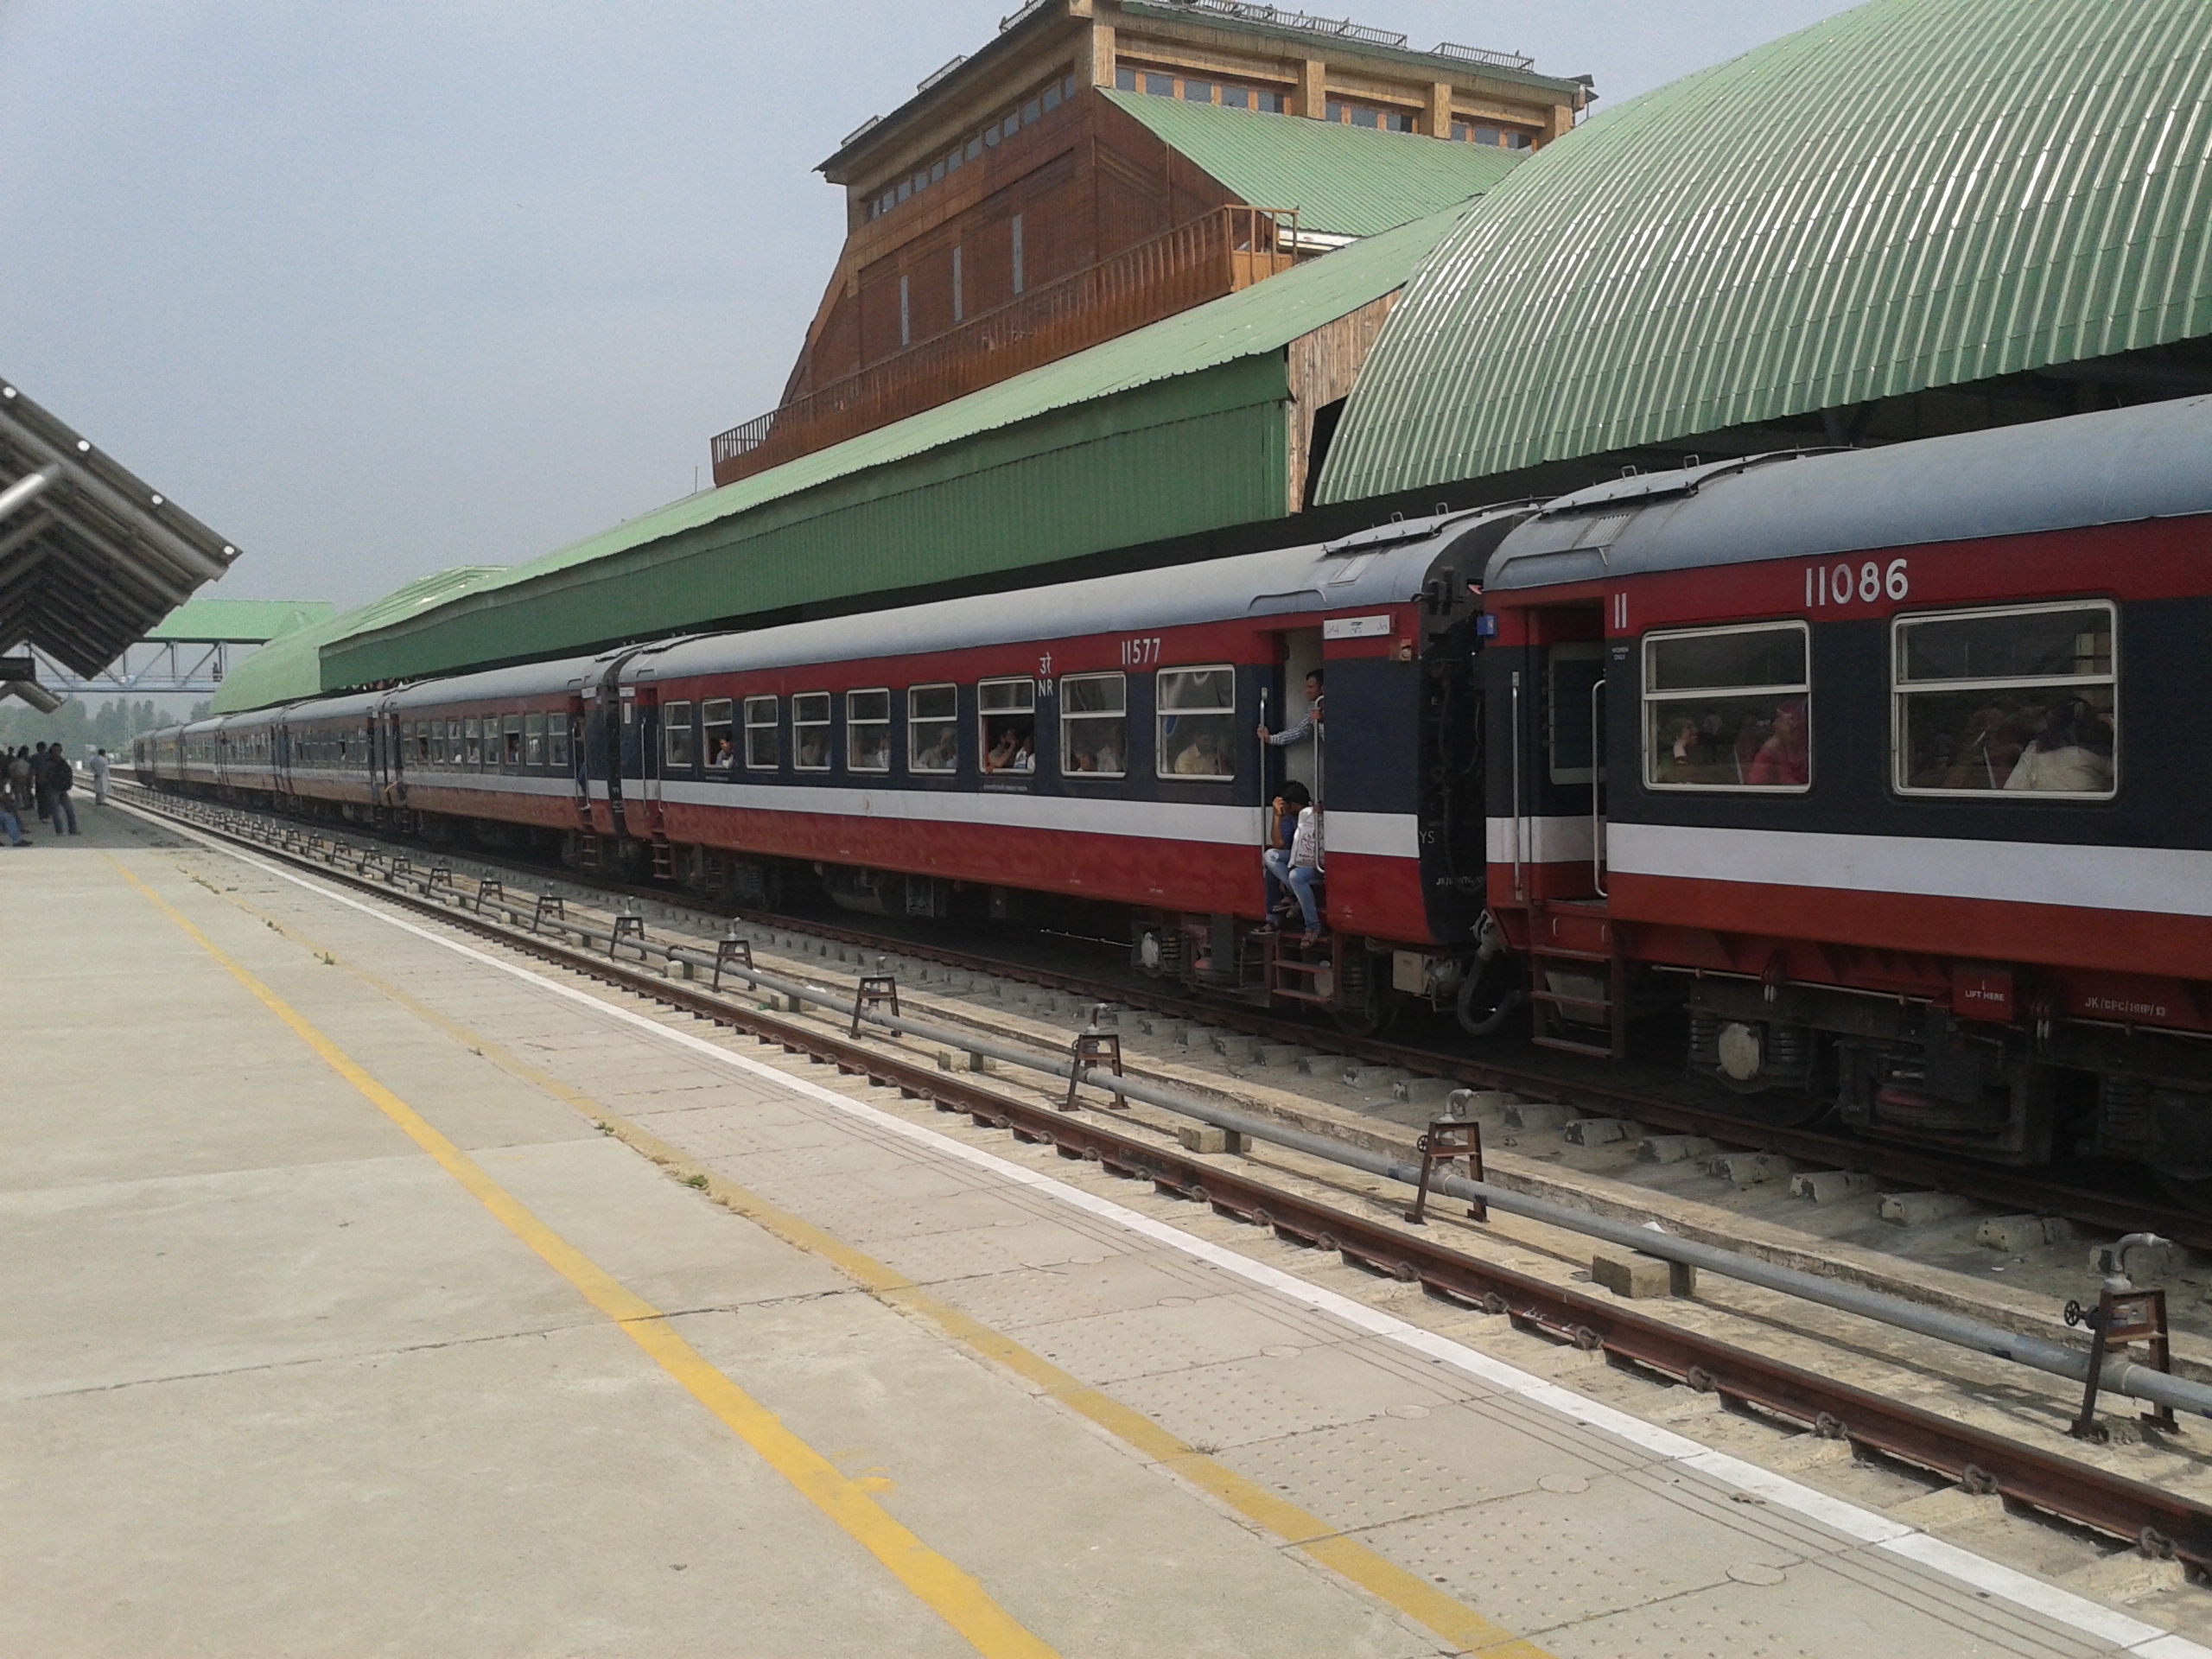 Train in Kashmir 2014 08 10 23 41